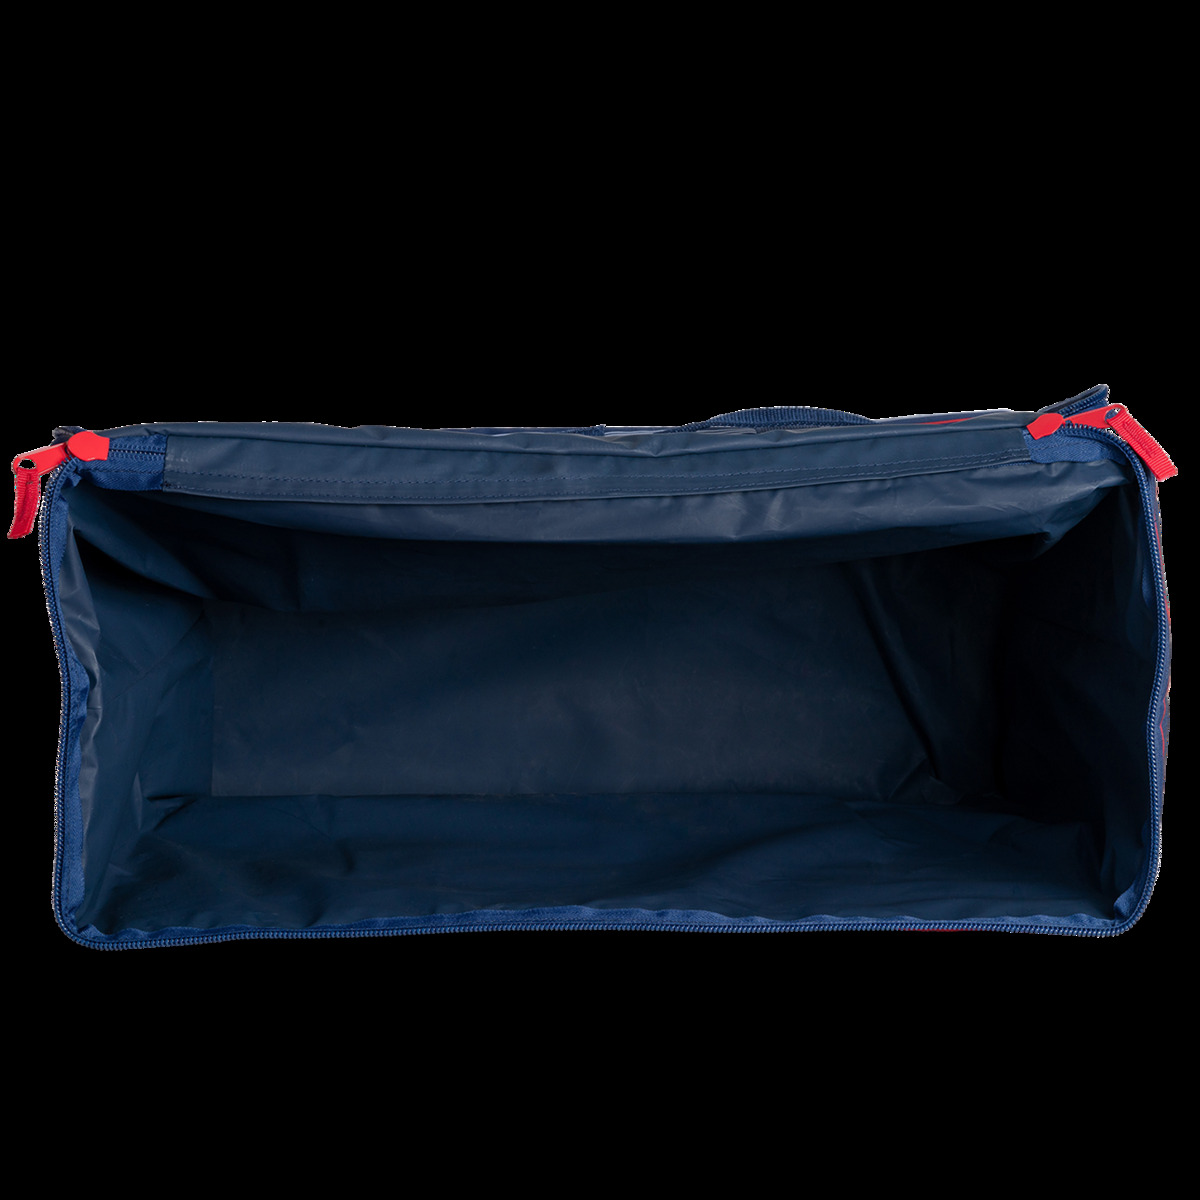 Keep Cool Rectangular Soft Cooler Bag - Dark Blue